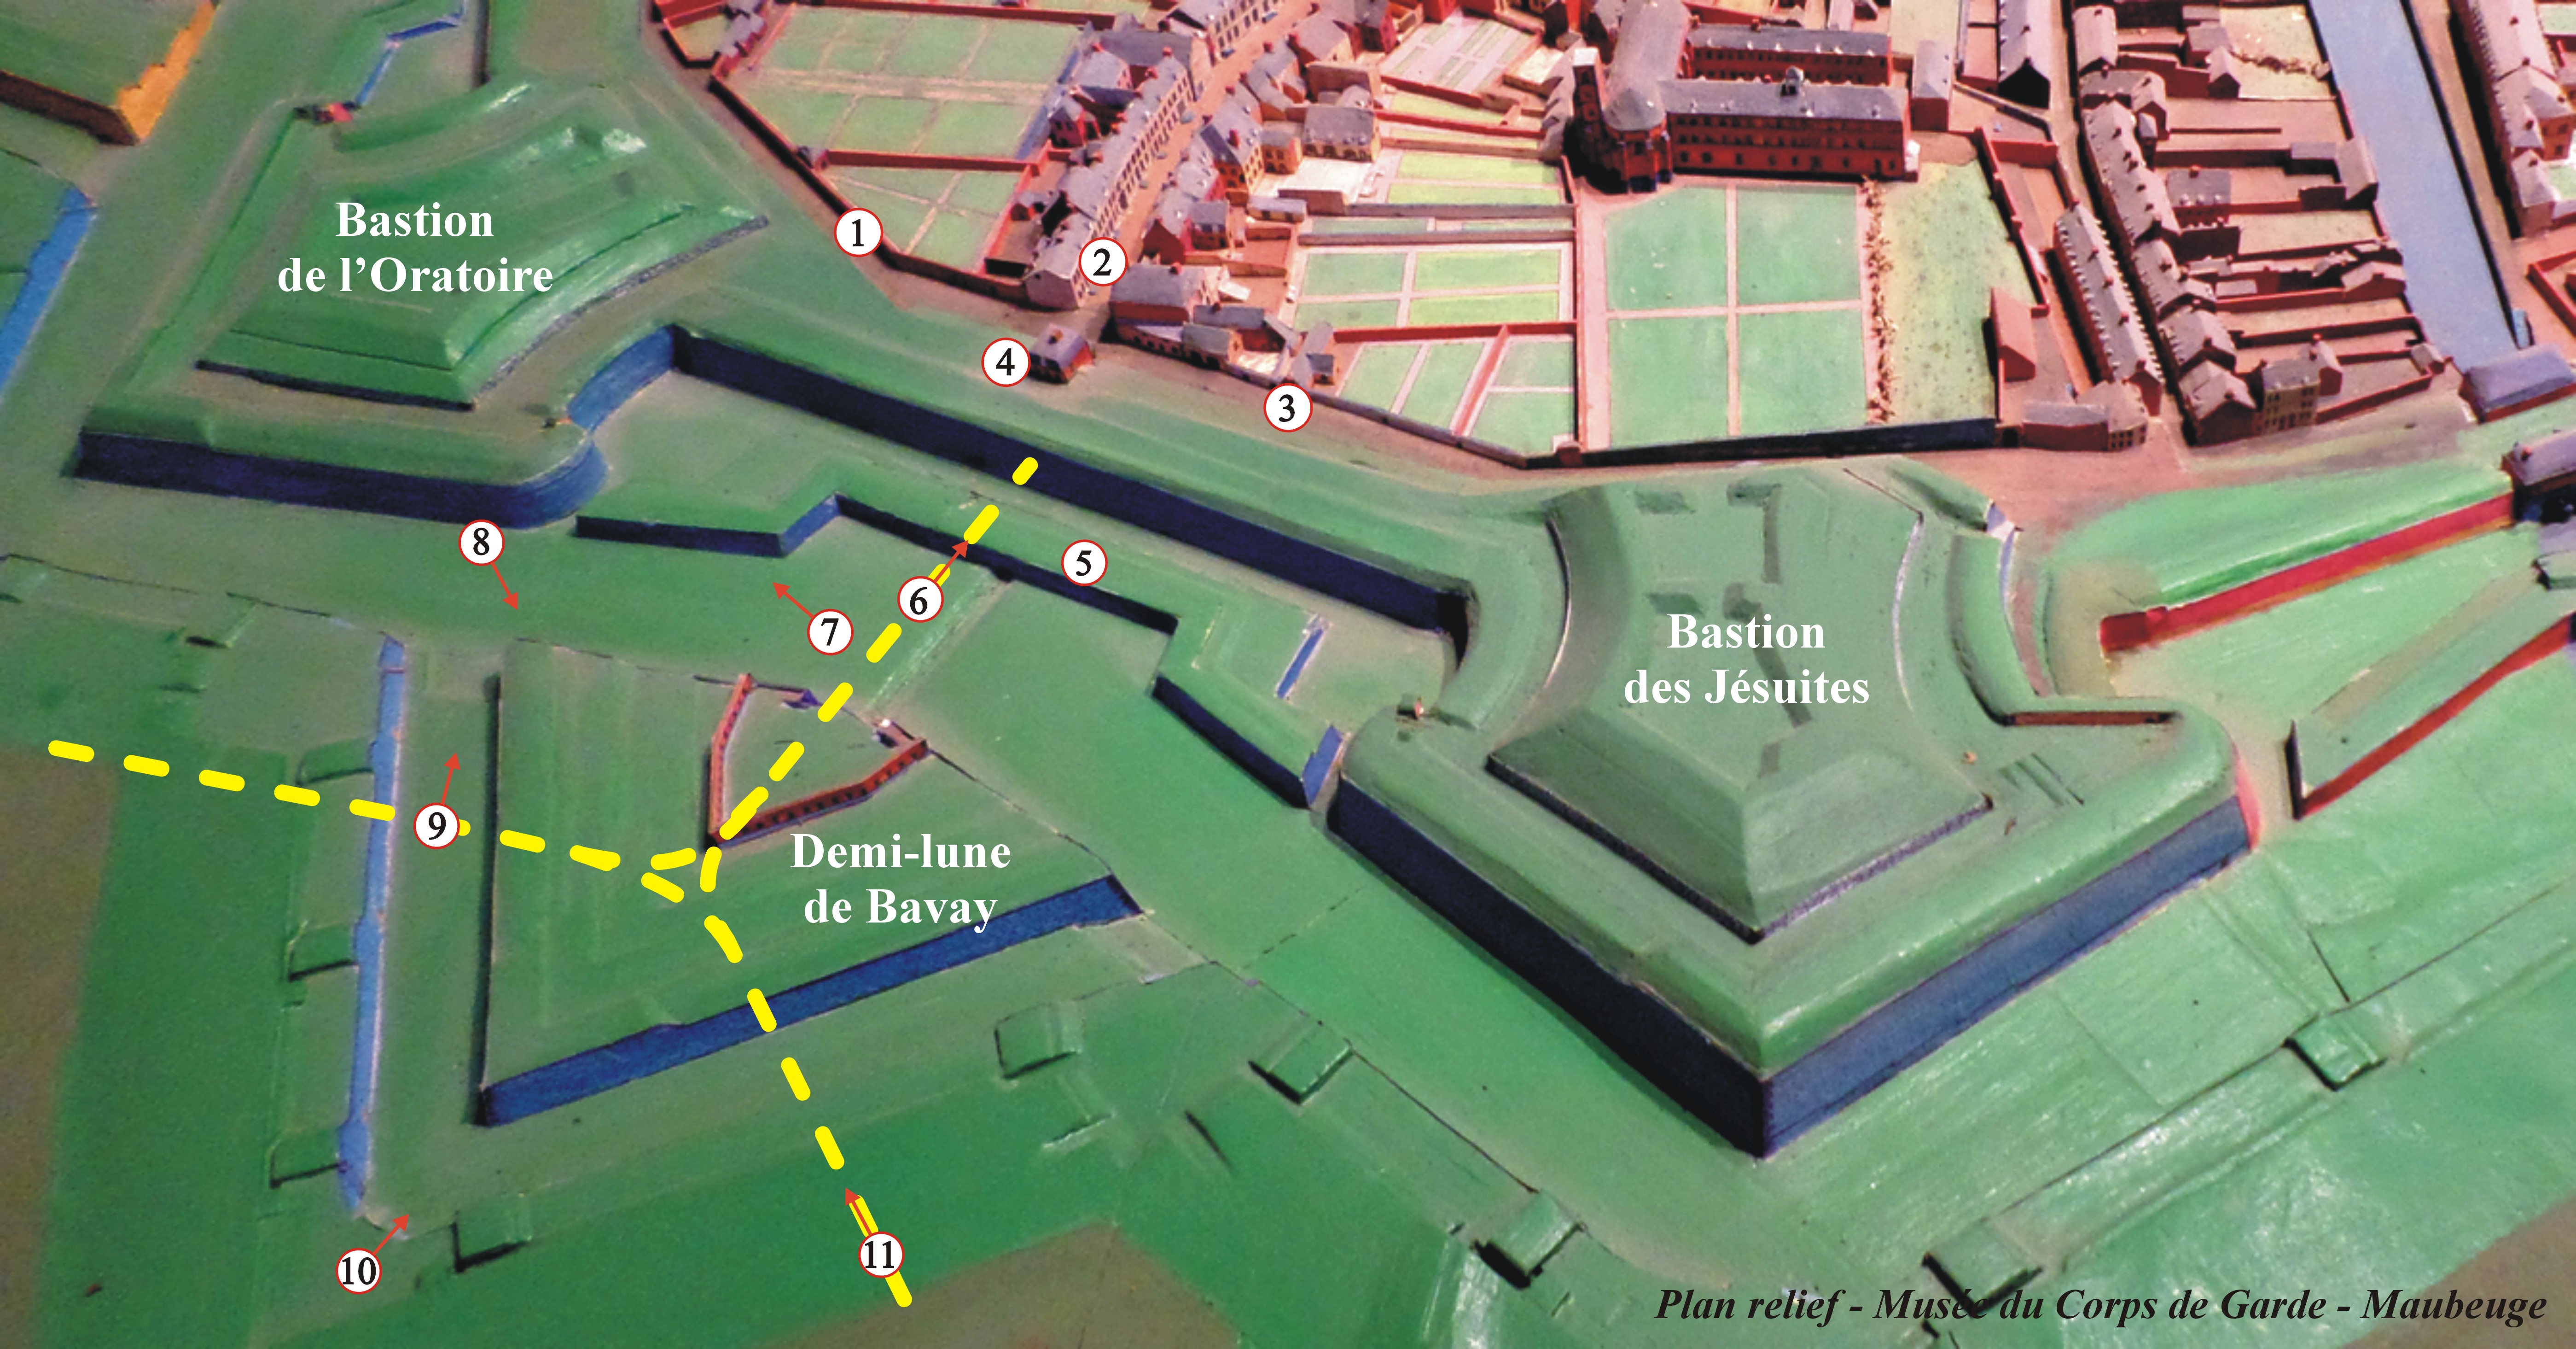 Les remparts de Maubeuge, le plan relief, les bastions des Capucins, de l'Oratoire, et la porte de Bavay